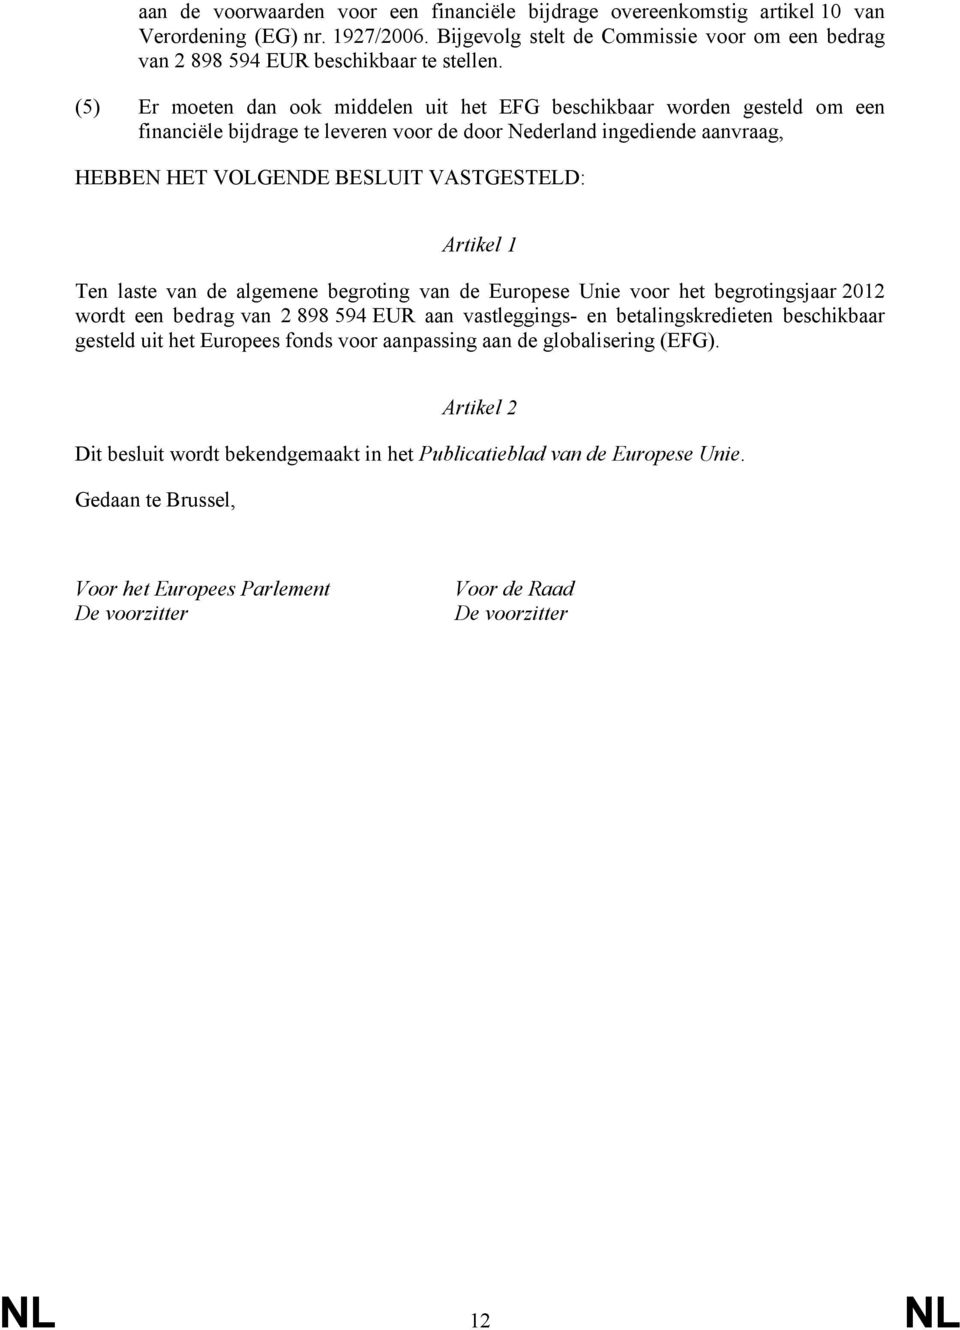 Artikel 1 Ten laste van de algemene begroting van de Europese Unie voor het begrotingsjaar 2012 wordt een bedrag van 2 898 594 EUR aan vastleggings- en betalingskredieten beschikbaar gesteld uit het